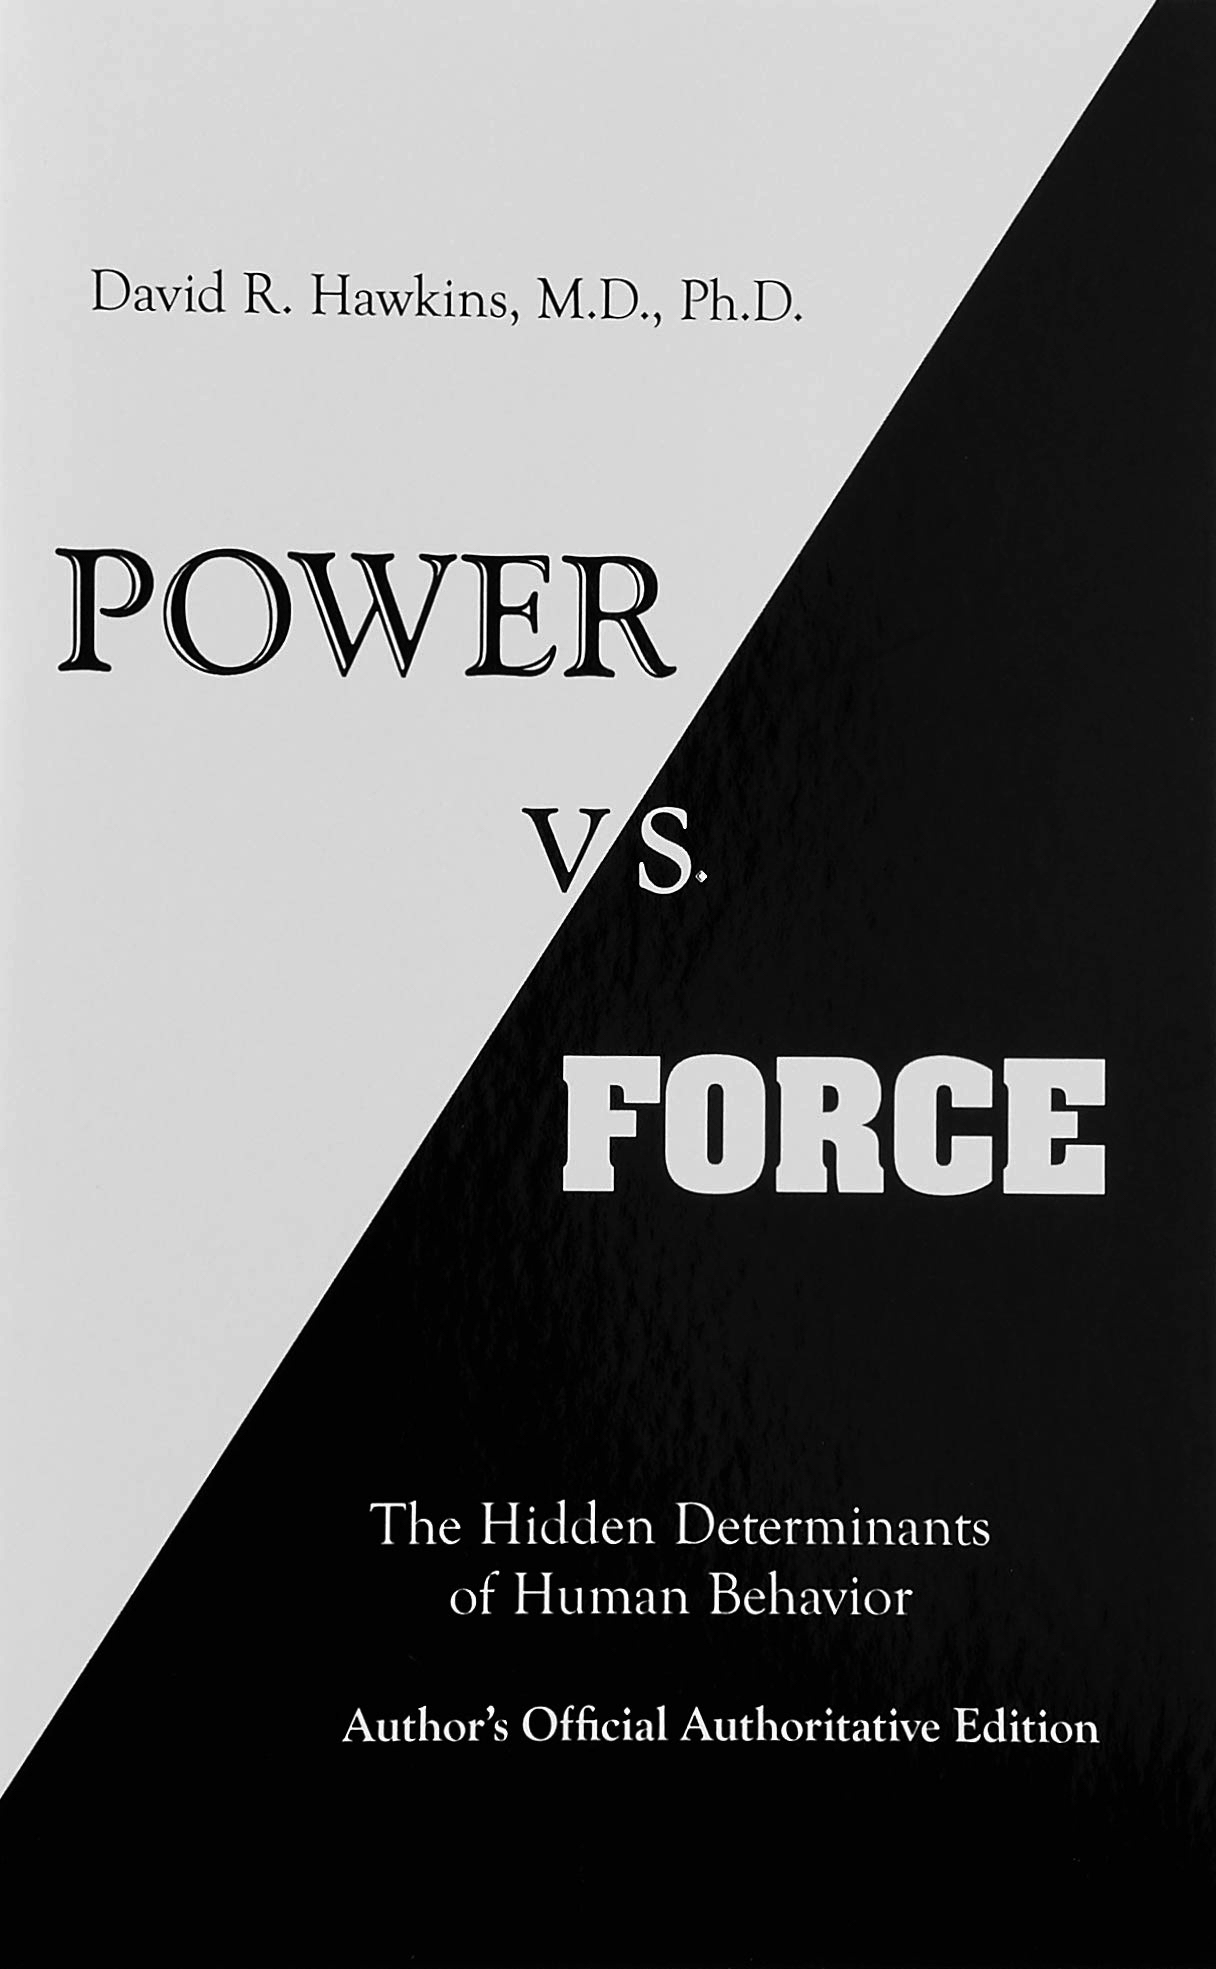 Power vs. Force.jpg